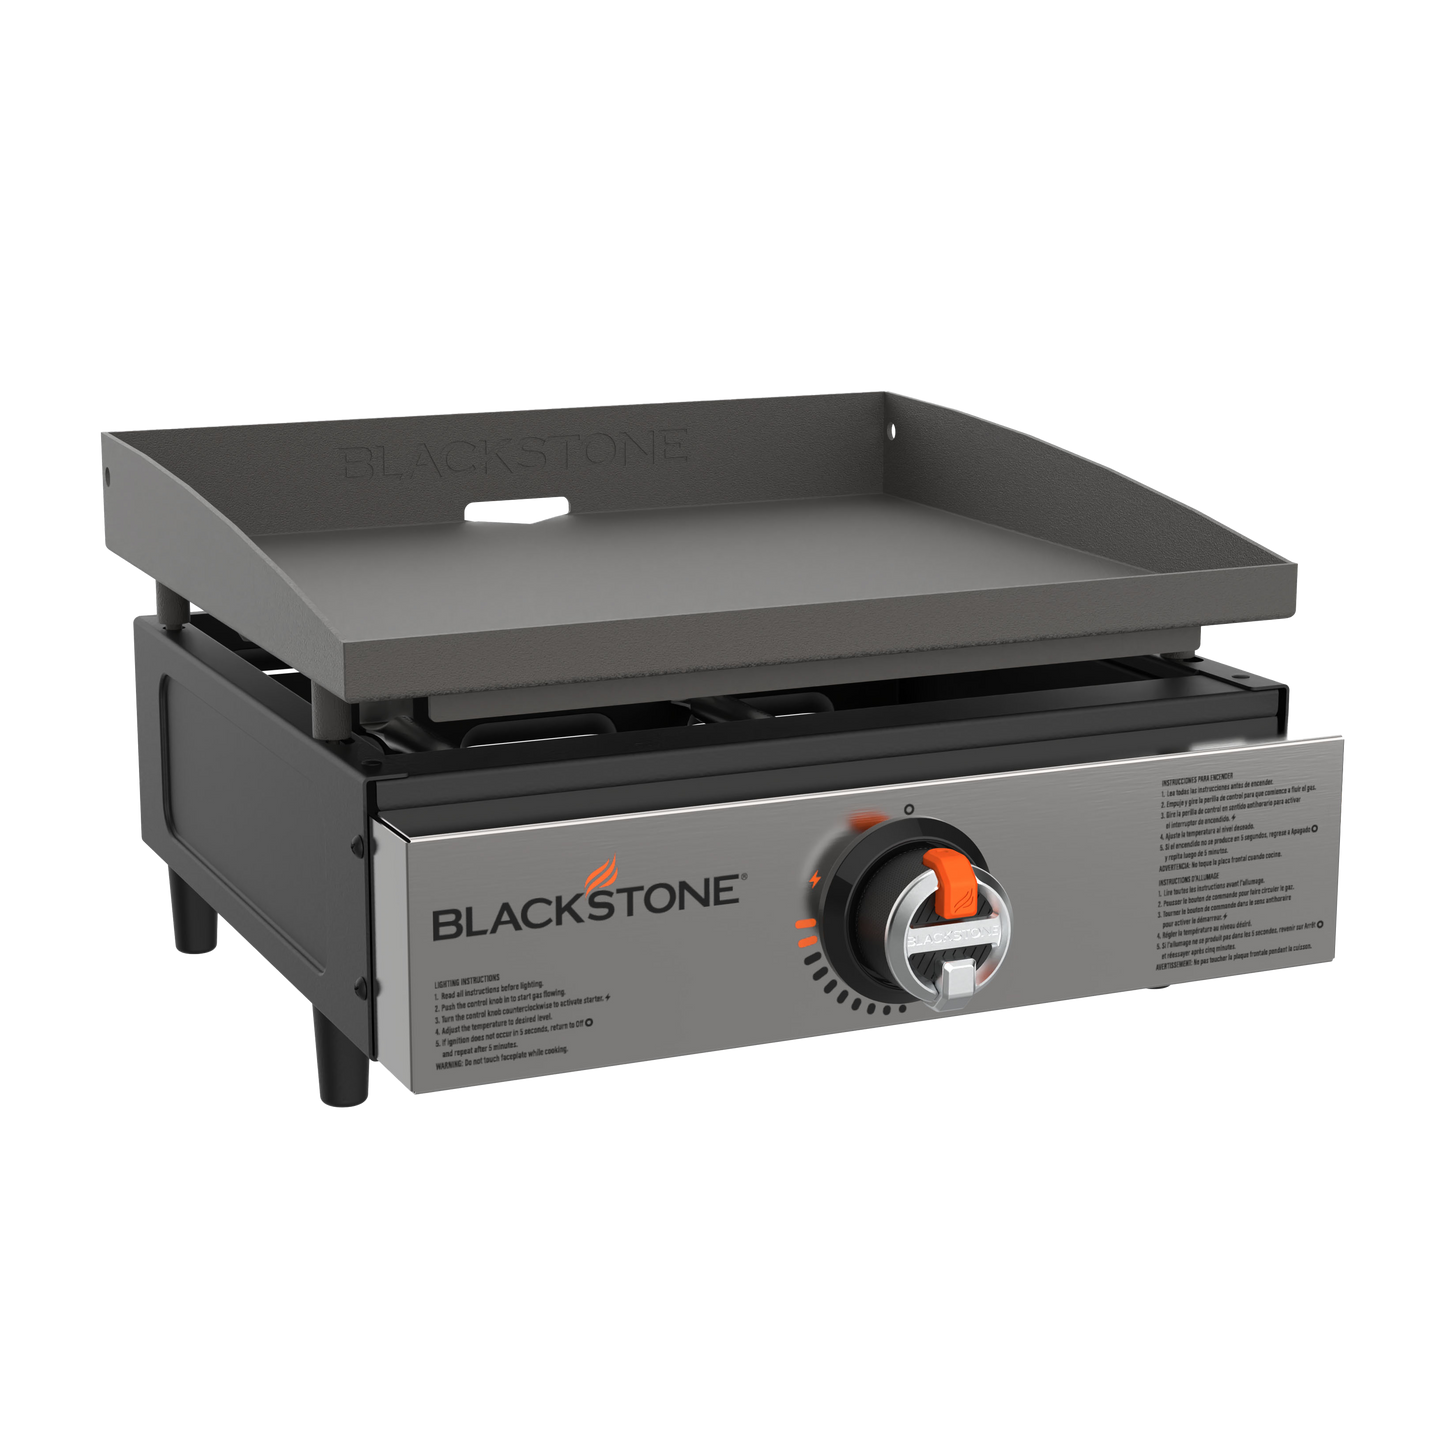 Blackstone 17” Tabletop Griddle